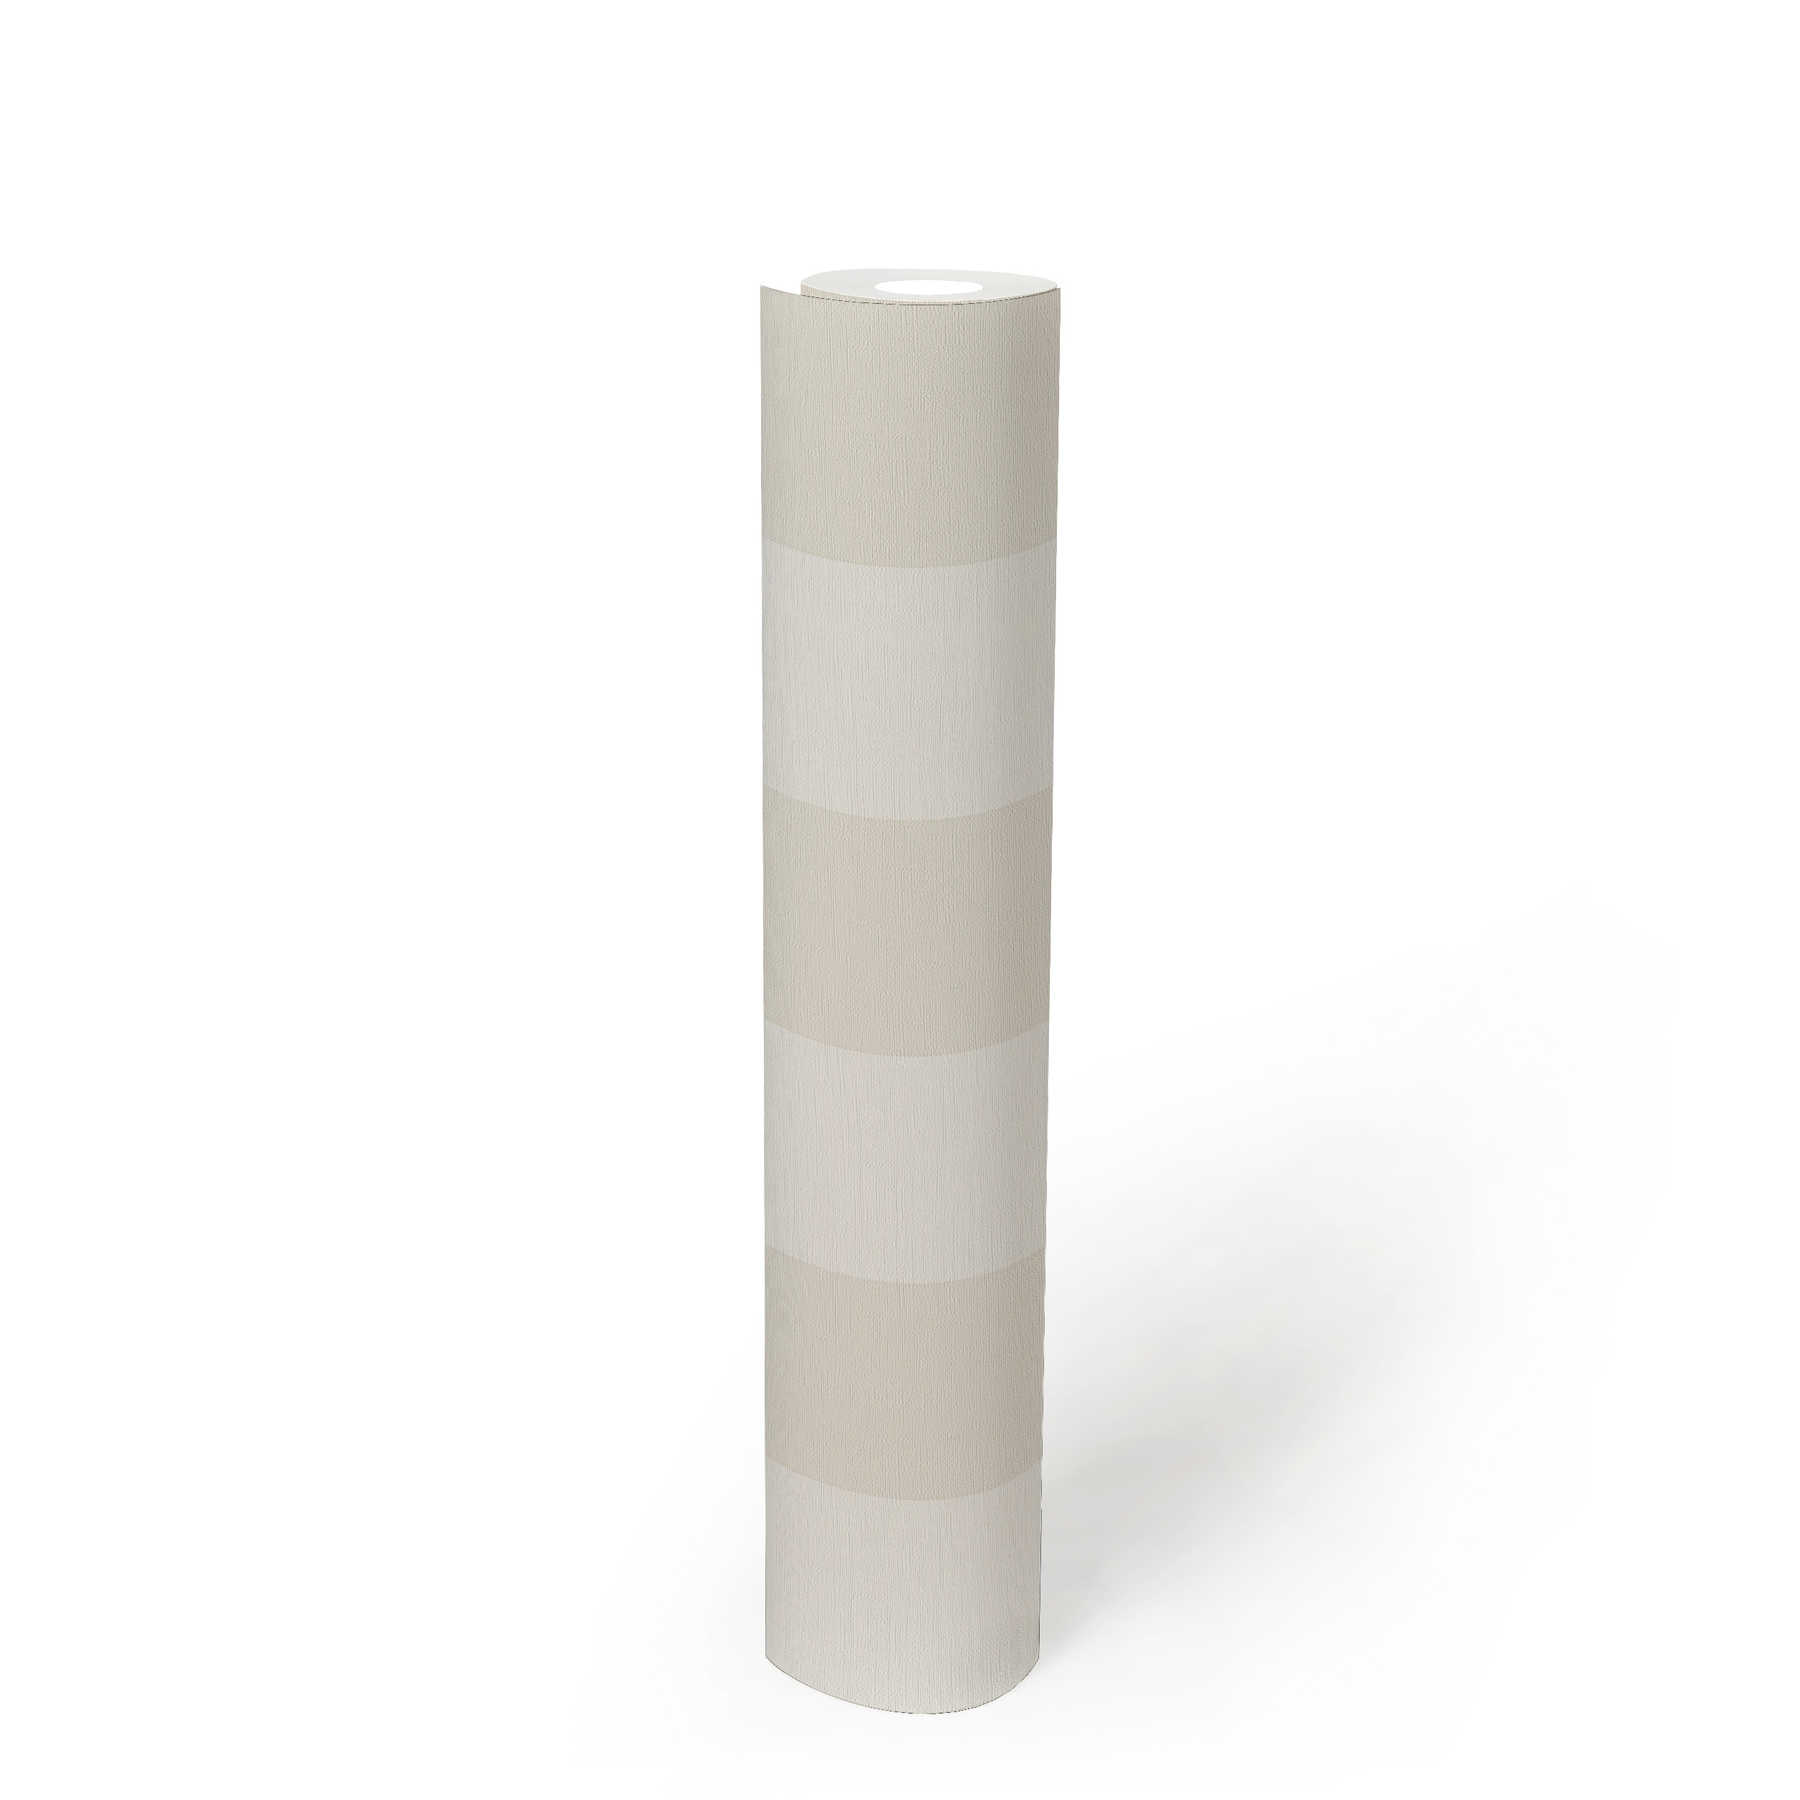             Blokstreepbehang met textiellook voor jong design - beige, wit
        